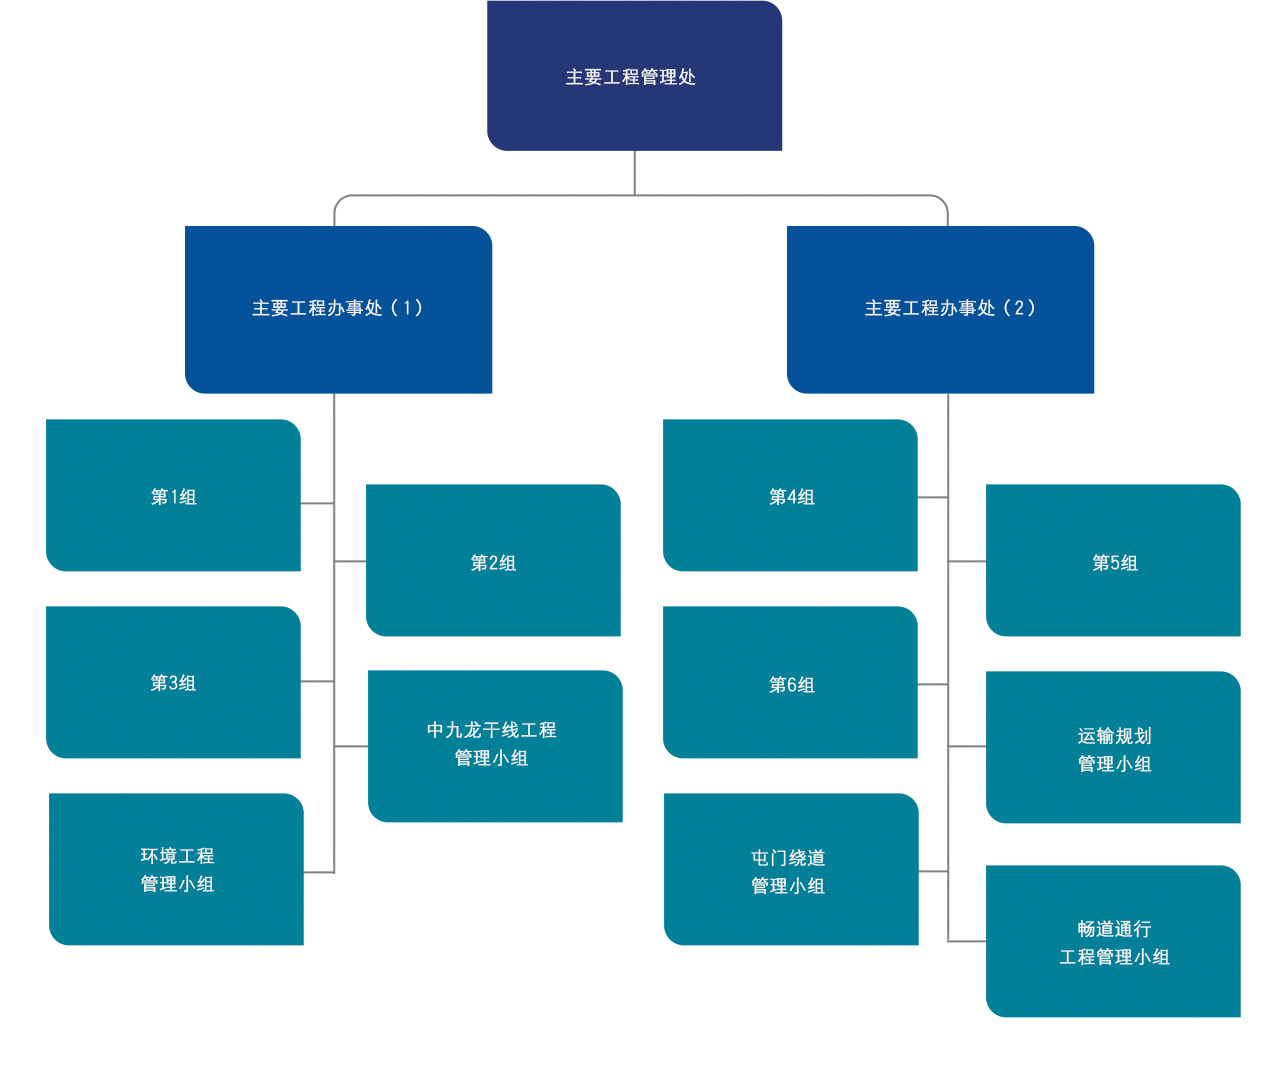 图: 主 要 工 程 管 理 处 组 织 图 表